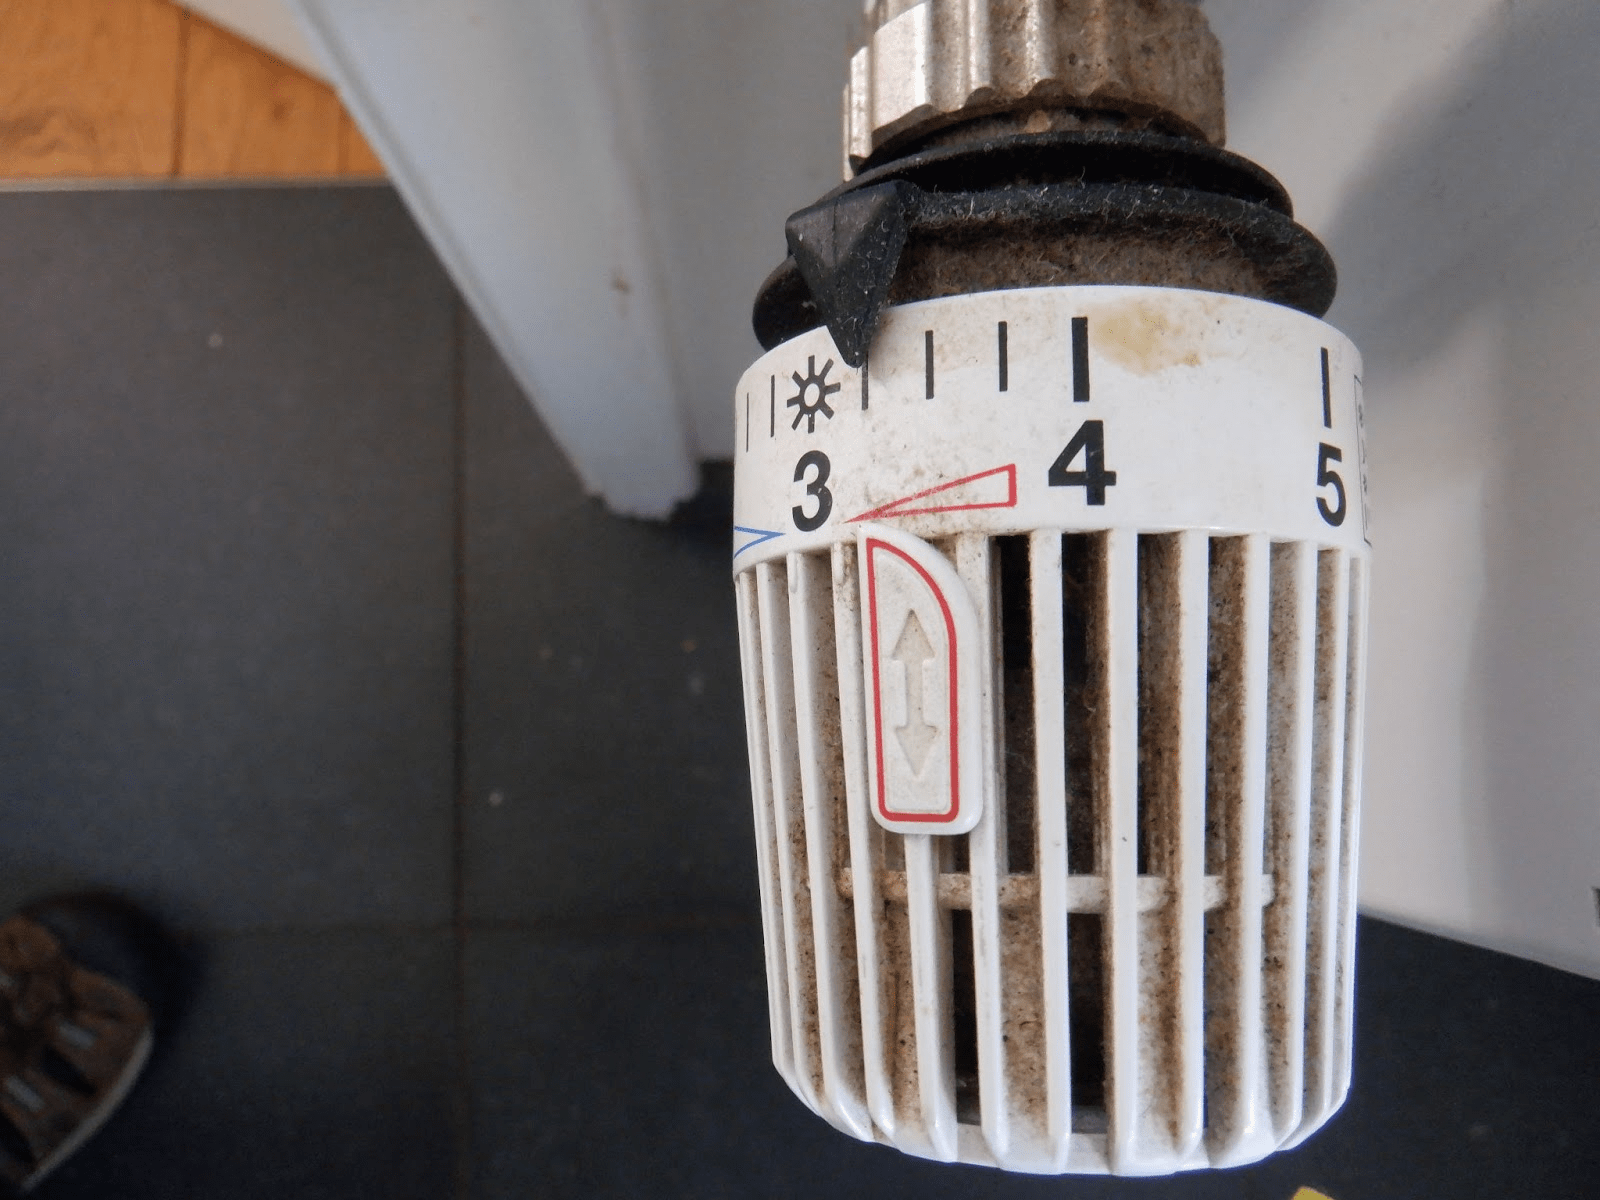 Vergemakkelijken Veroveraar Verbinding De thermostatische radiatorkraan, gebruik 'm goed - Druifkracht